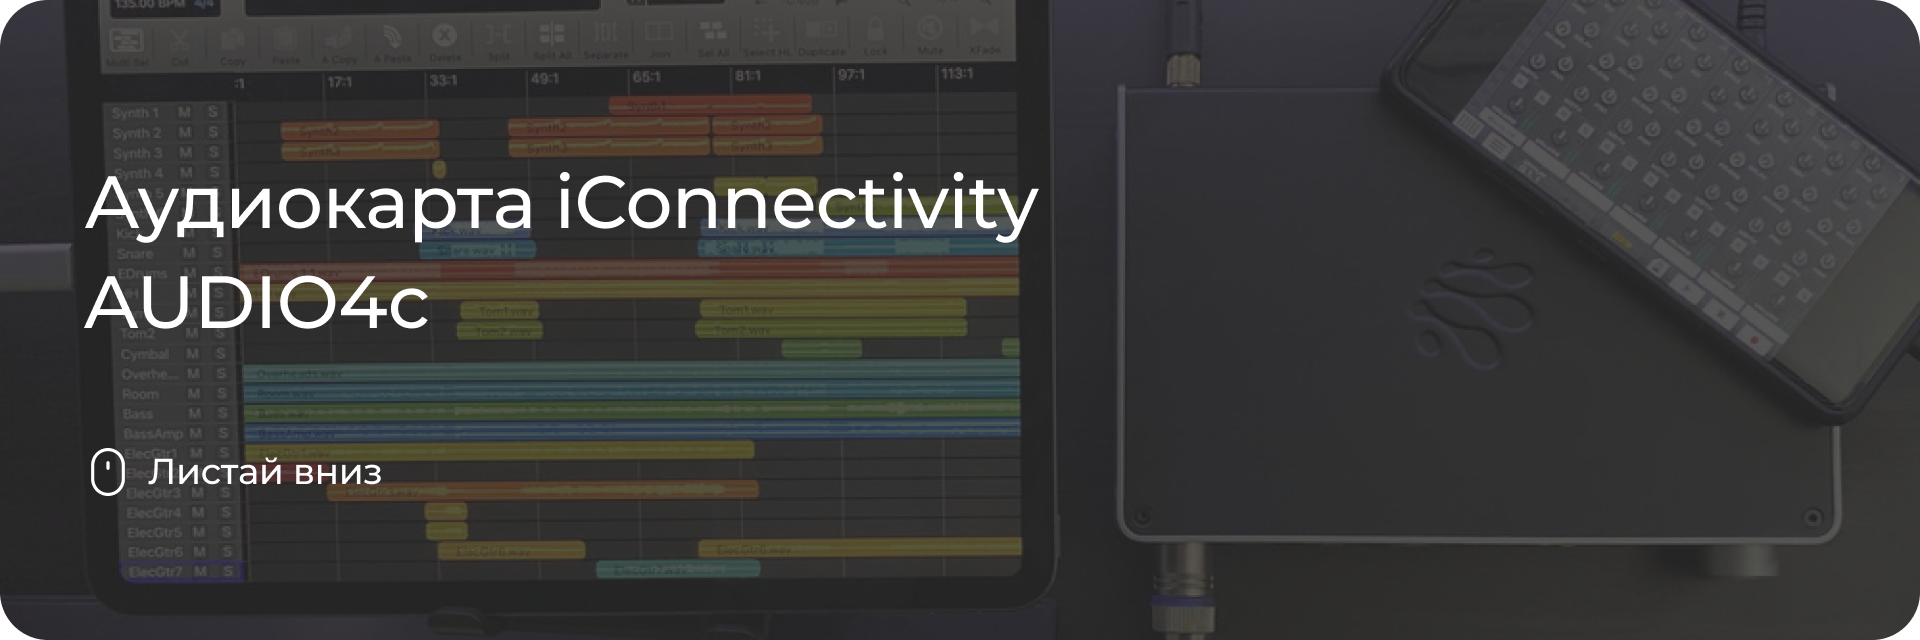 Аудиокарта iConnectivity AUDIO4c